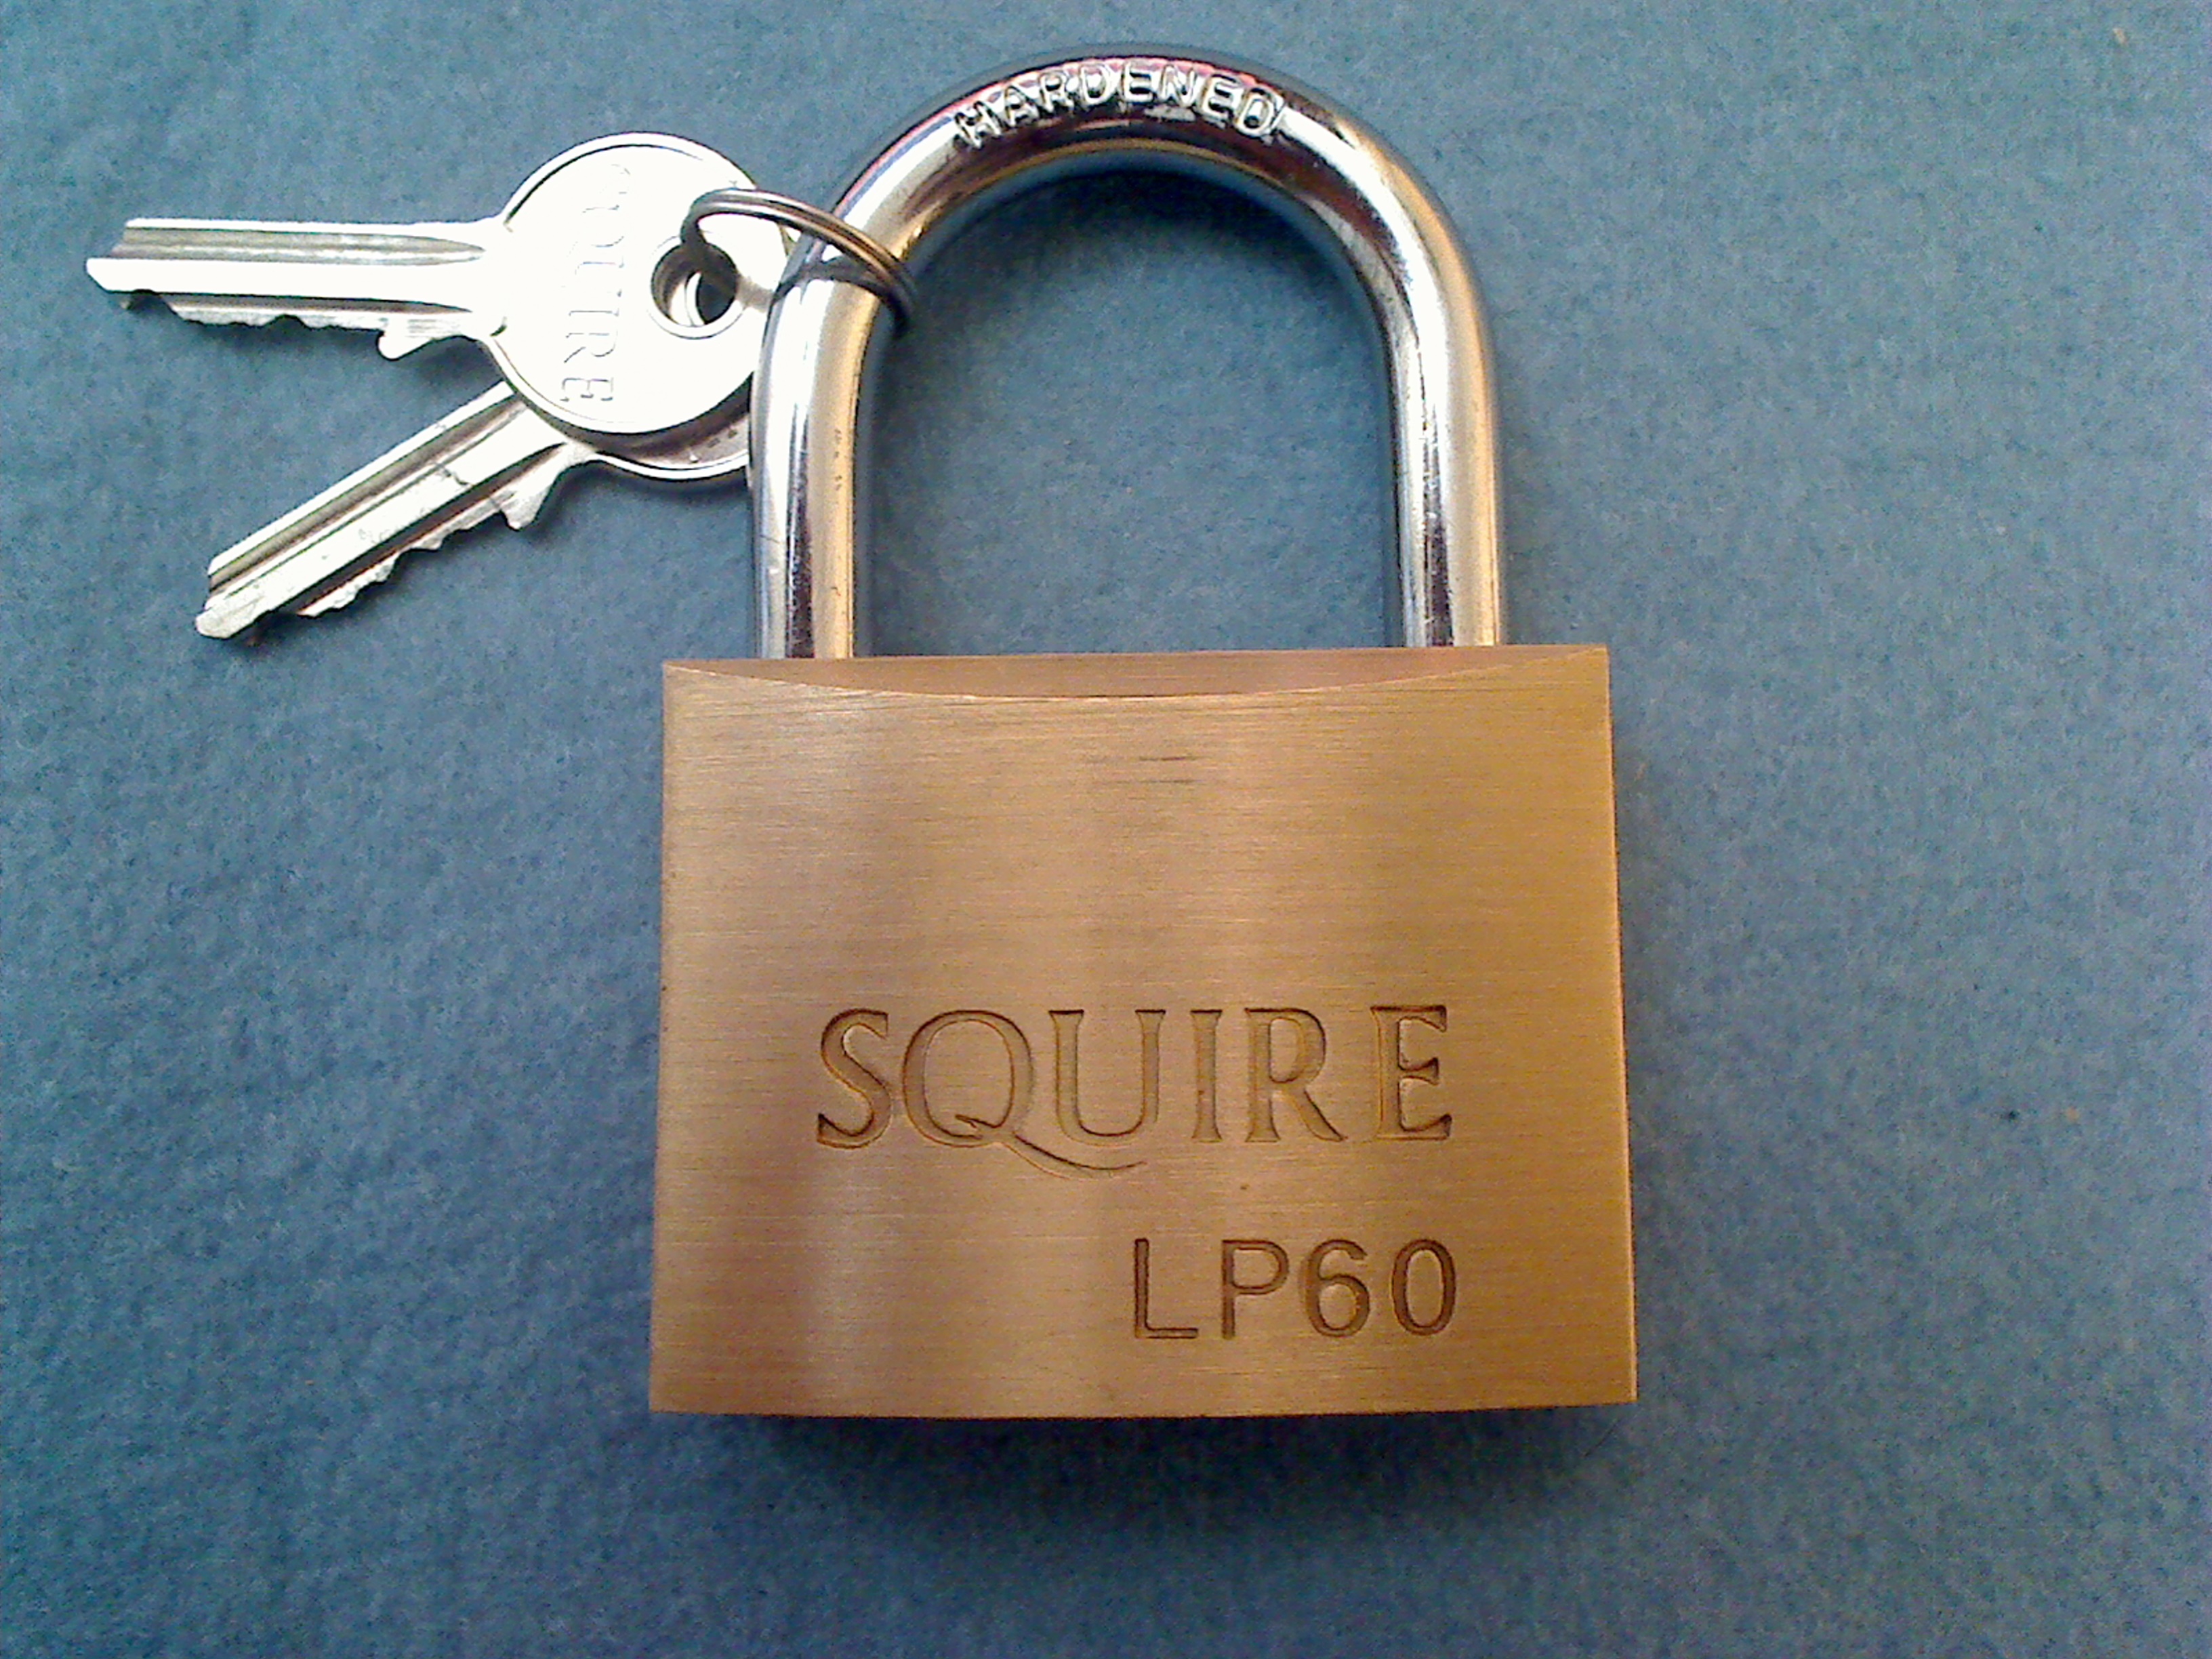 Squire LP60